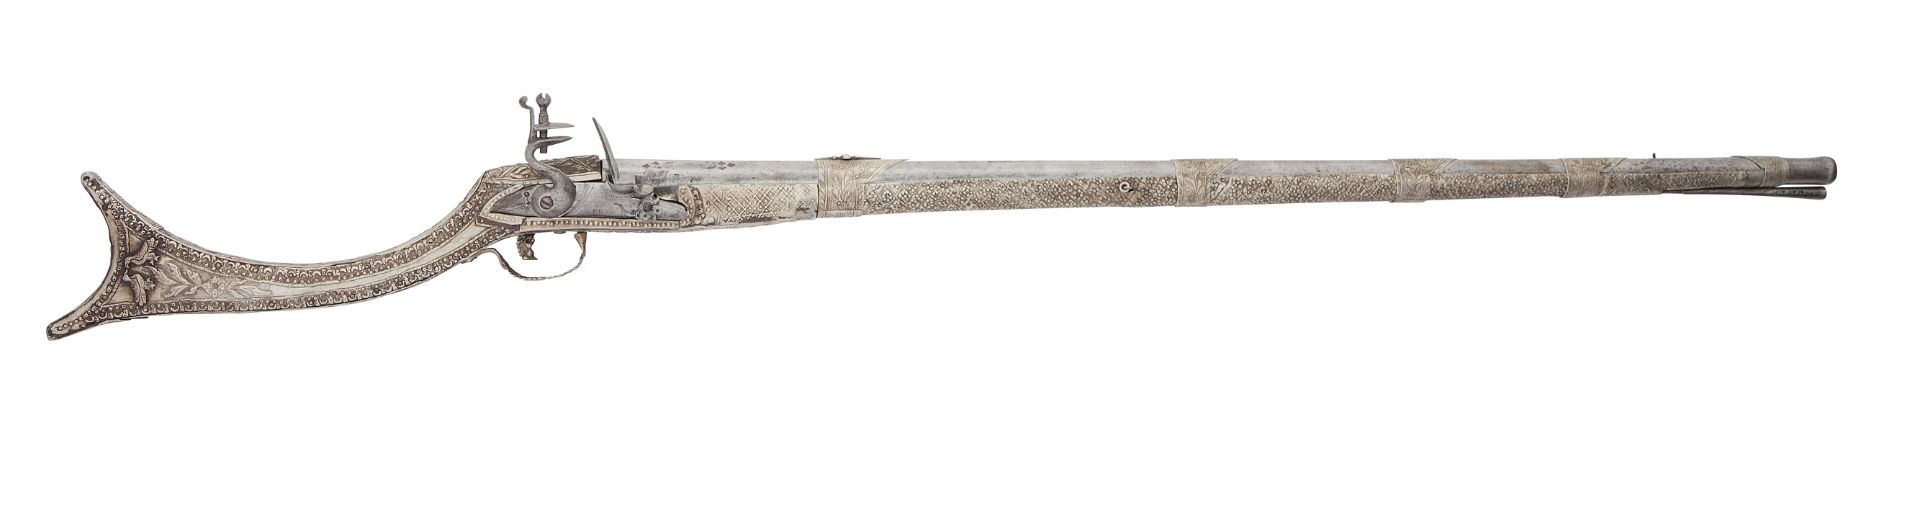 A Balkan (Souliot) 14-Bore Flintlock Gun (Kariophili)